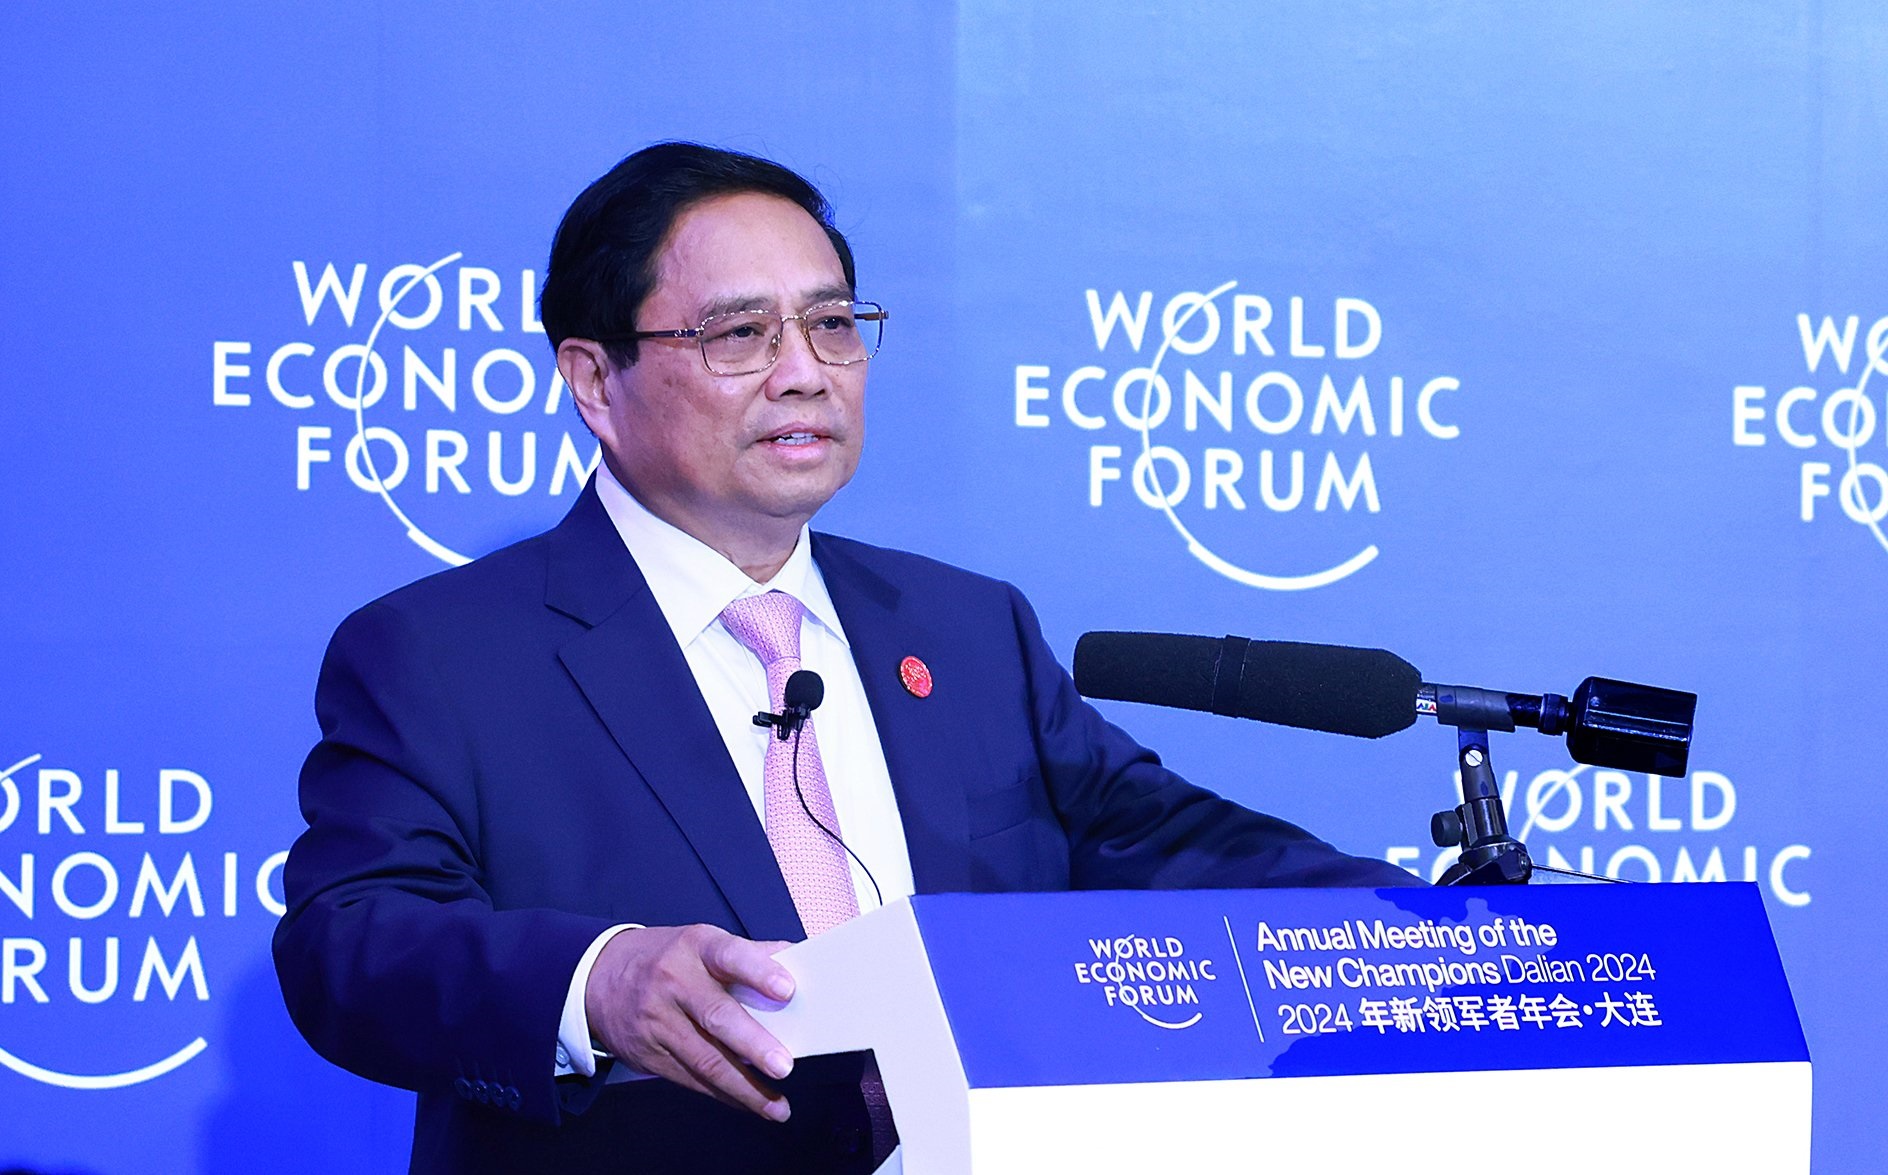 Chia sẻ những định hướng thời gian tới, Thủ tướng cho biết Việt Nam tiếp tục ưu tiên cho tăng trưởng, với các nhóm giải pháp lớn - Ảnh: Dương Giang/TTXVN